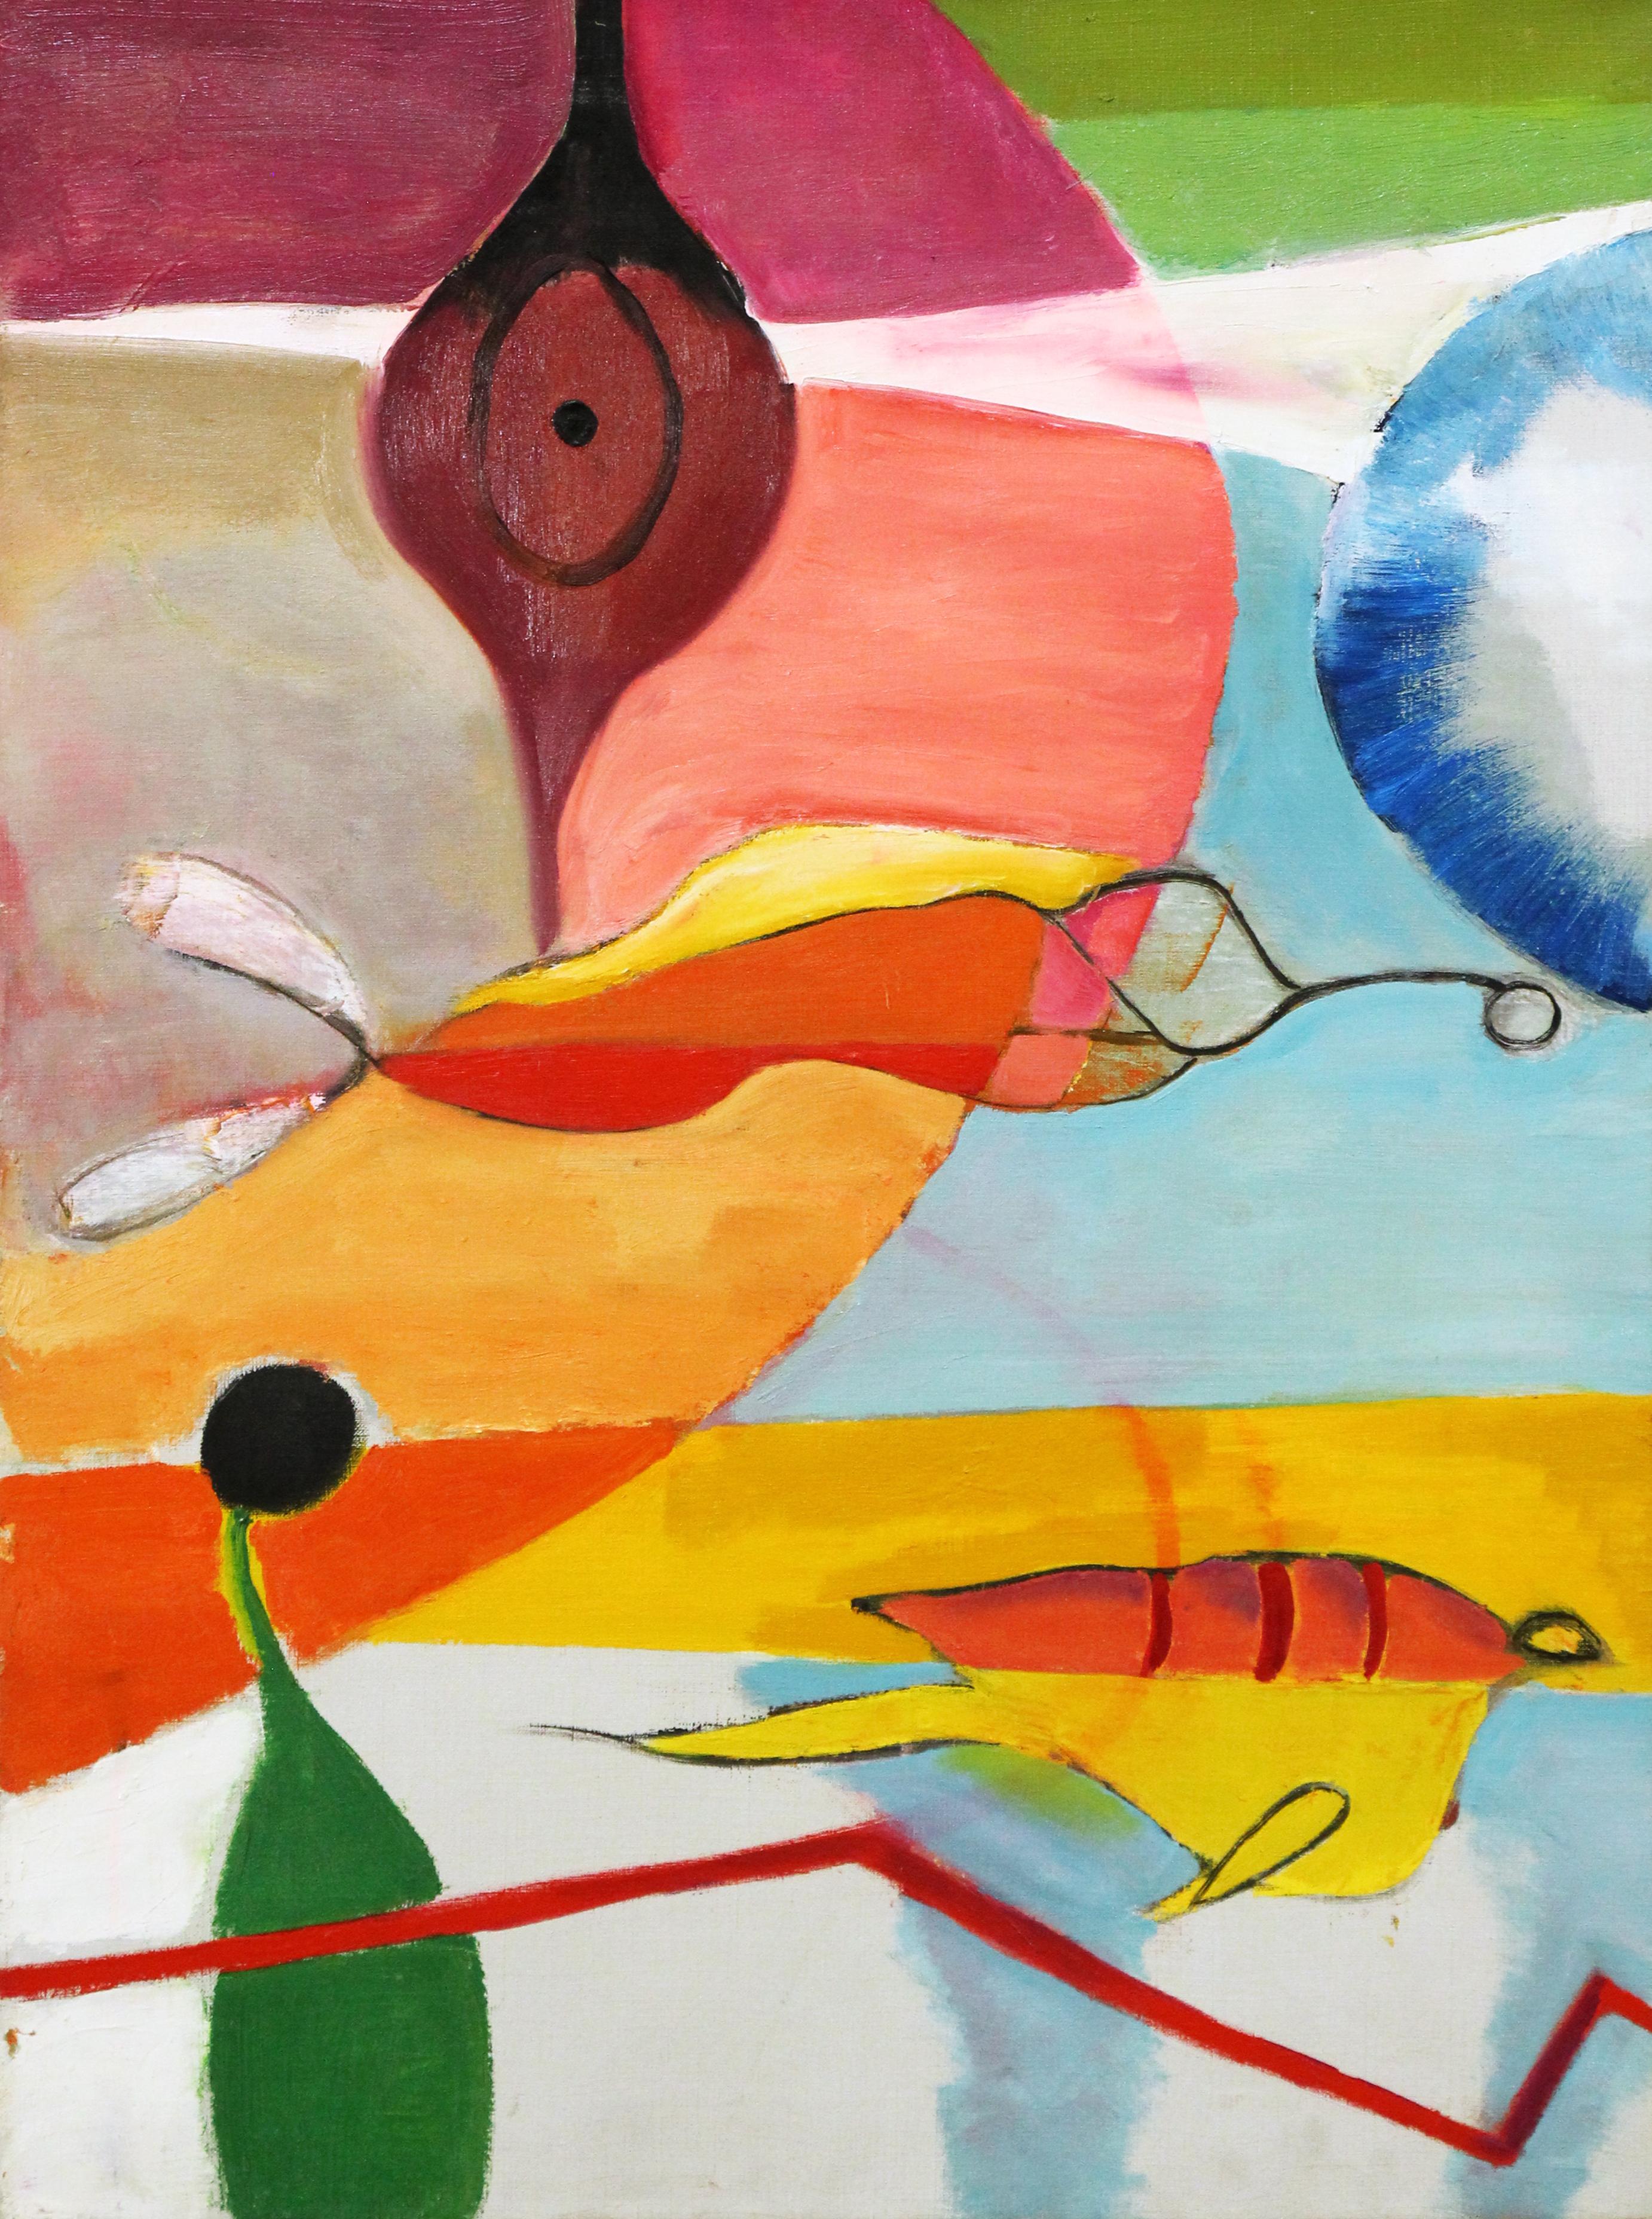 "Untitled Abstract" ist ein 30 x 22 Zoll, Öl auf Leinwand Gemälde von amerikanischen modernistischen und surrealistischen, weiblichen Künstler Peter Miller. Das Werk ist in einer leuchtenden Farbpalette gemalt und rückseitig mit dem Nachlassstempel